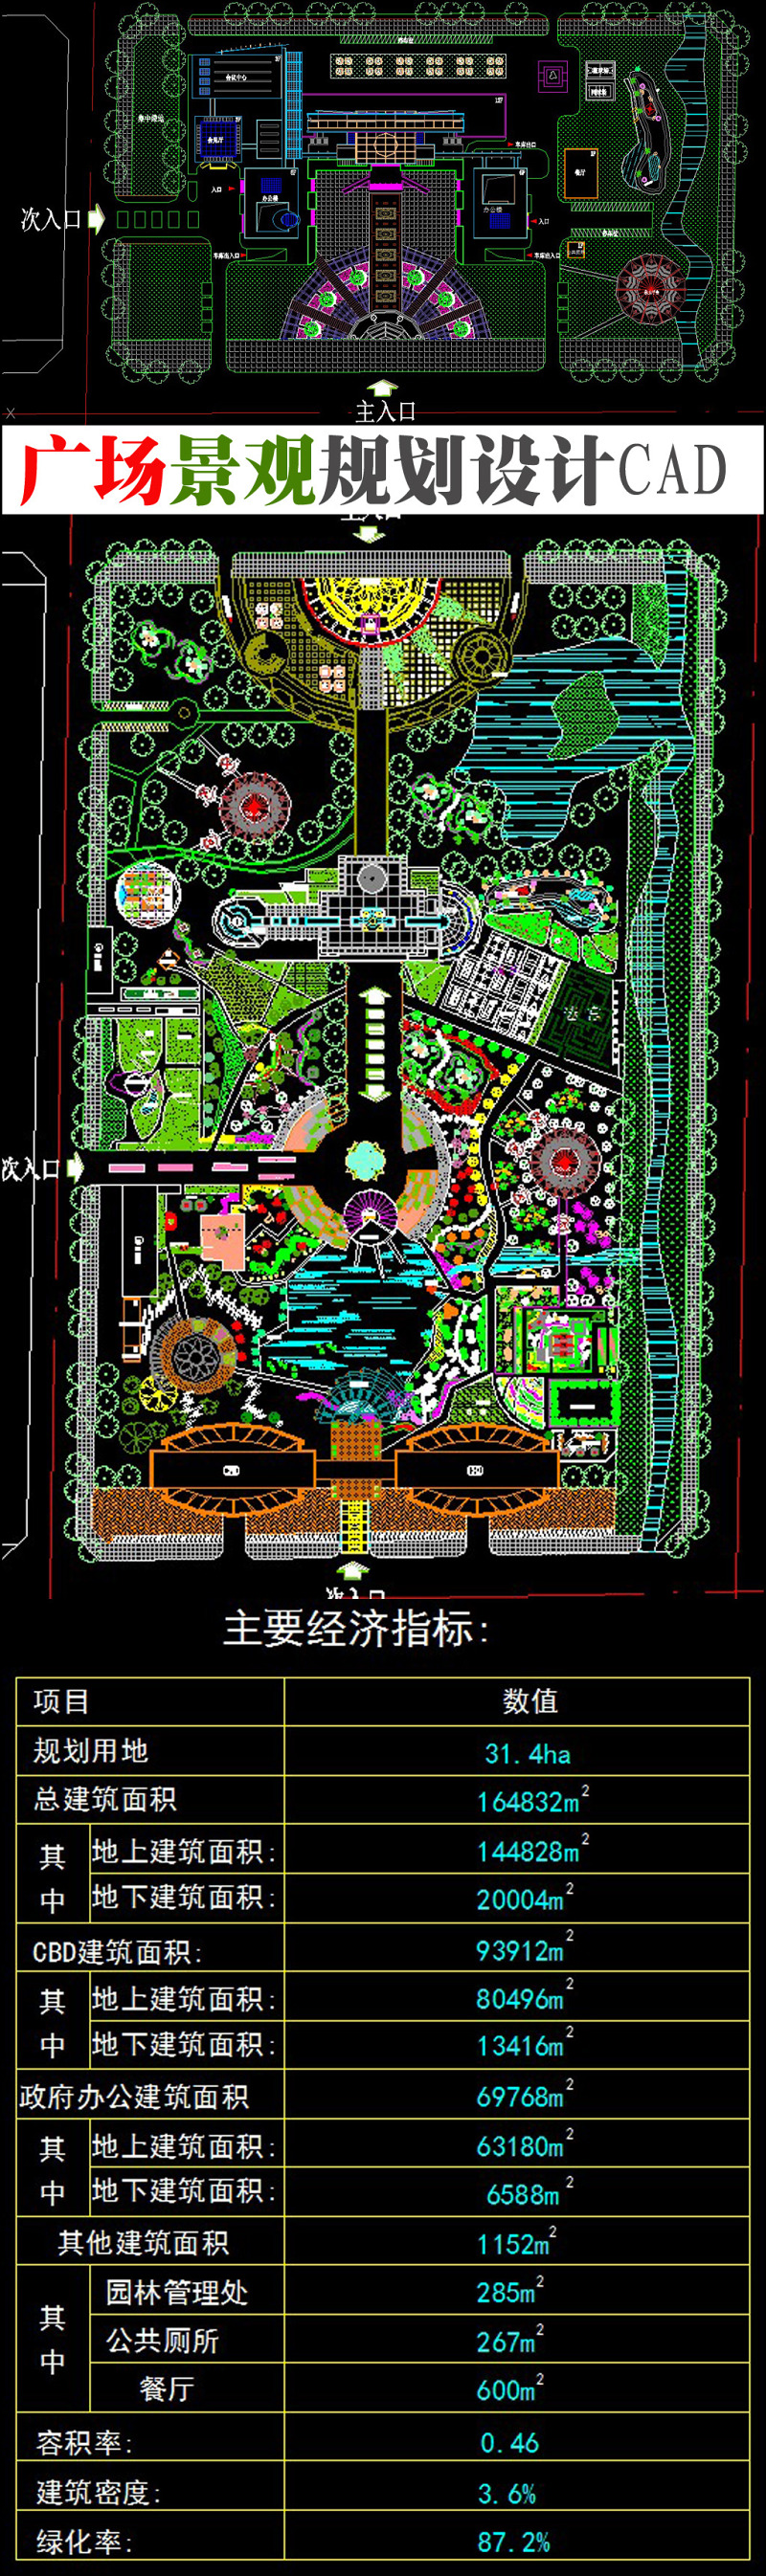 原创广场景观规划设计CAD图纸-版权可商用